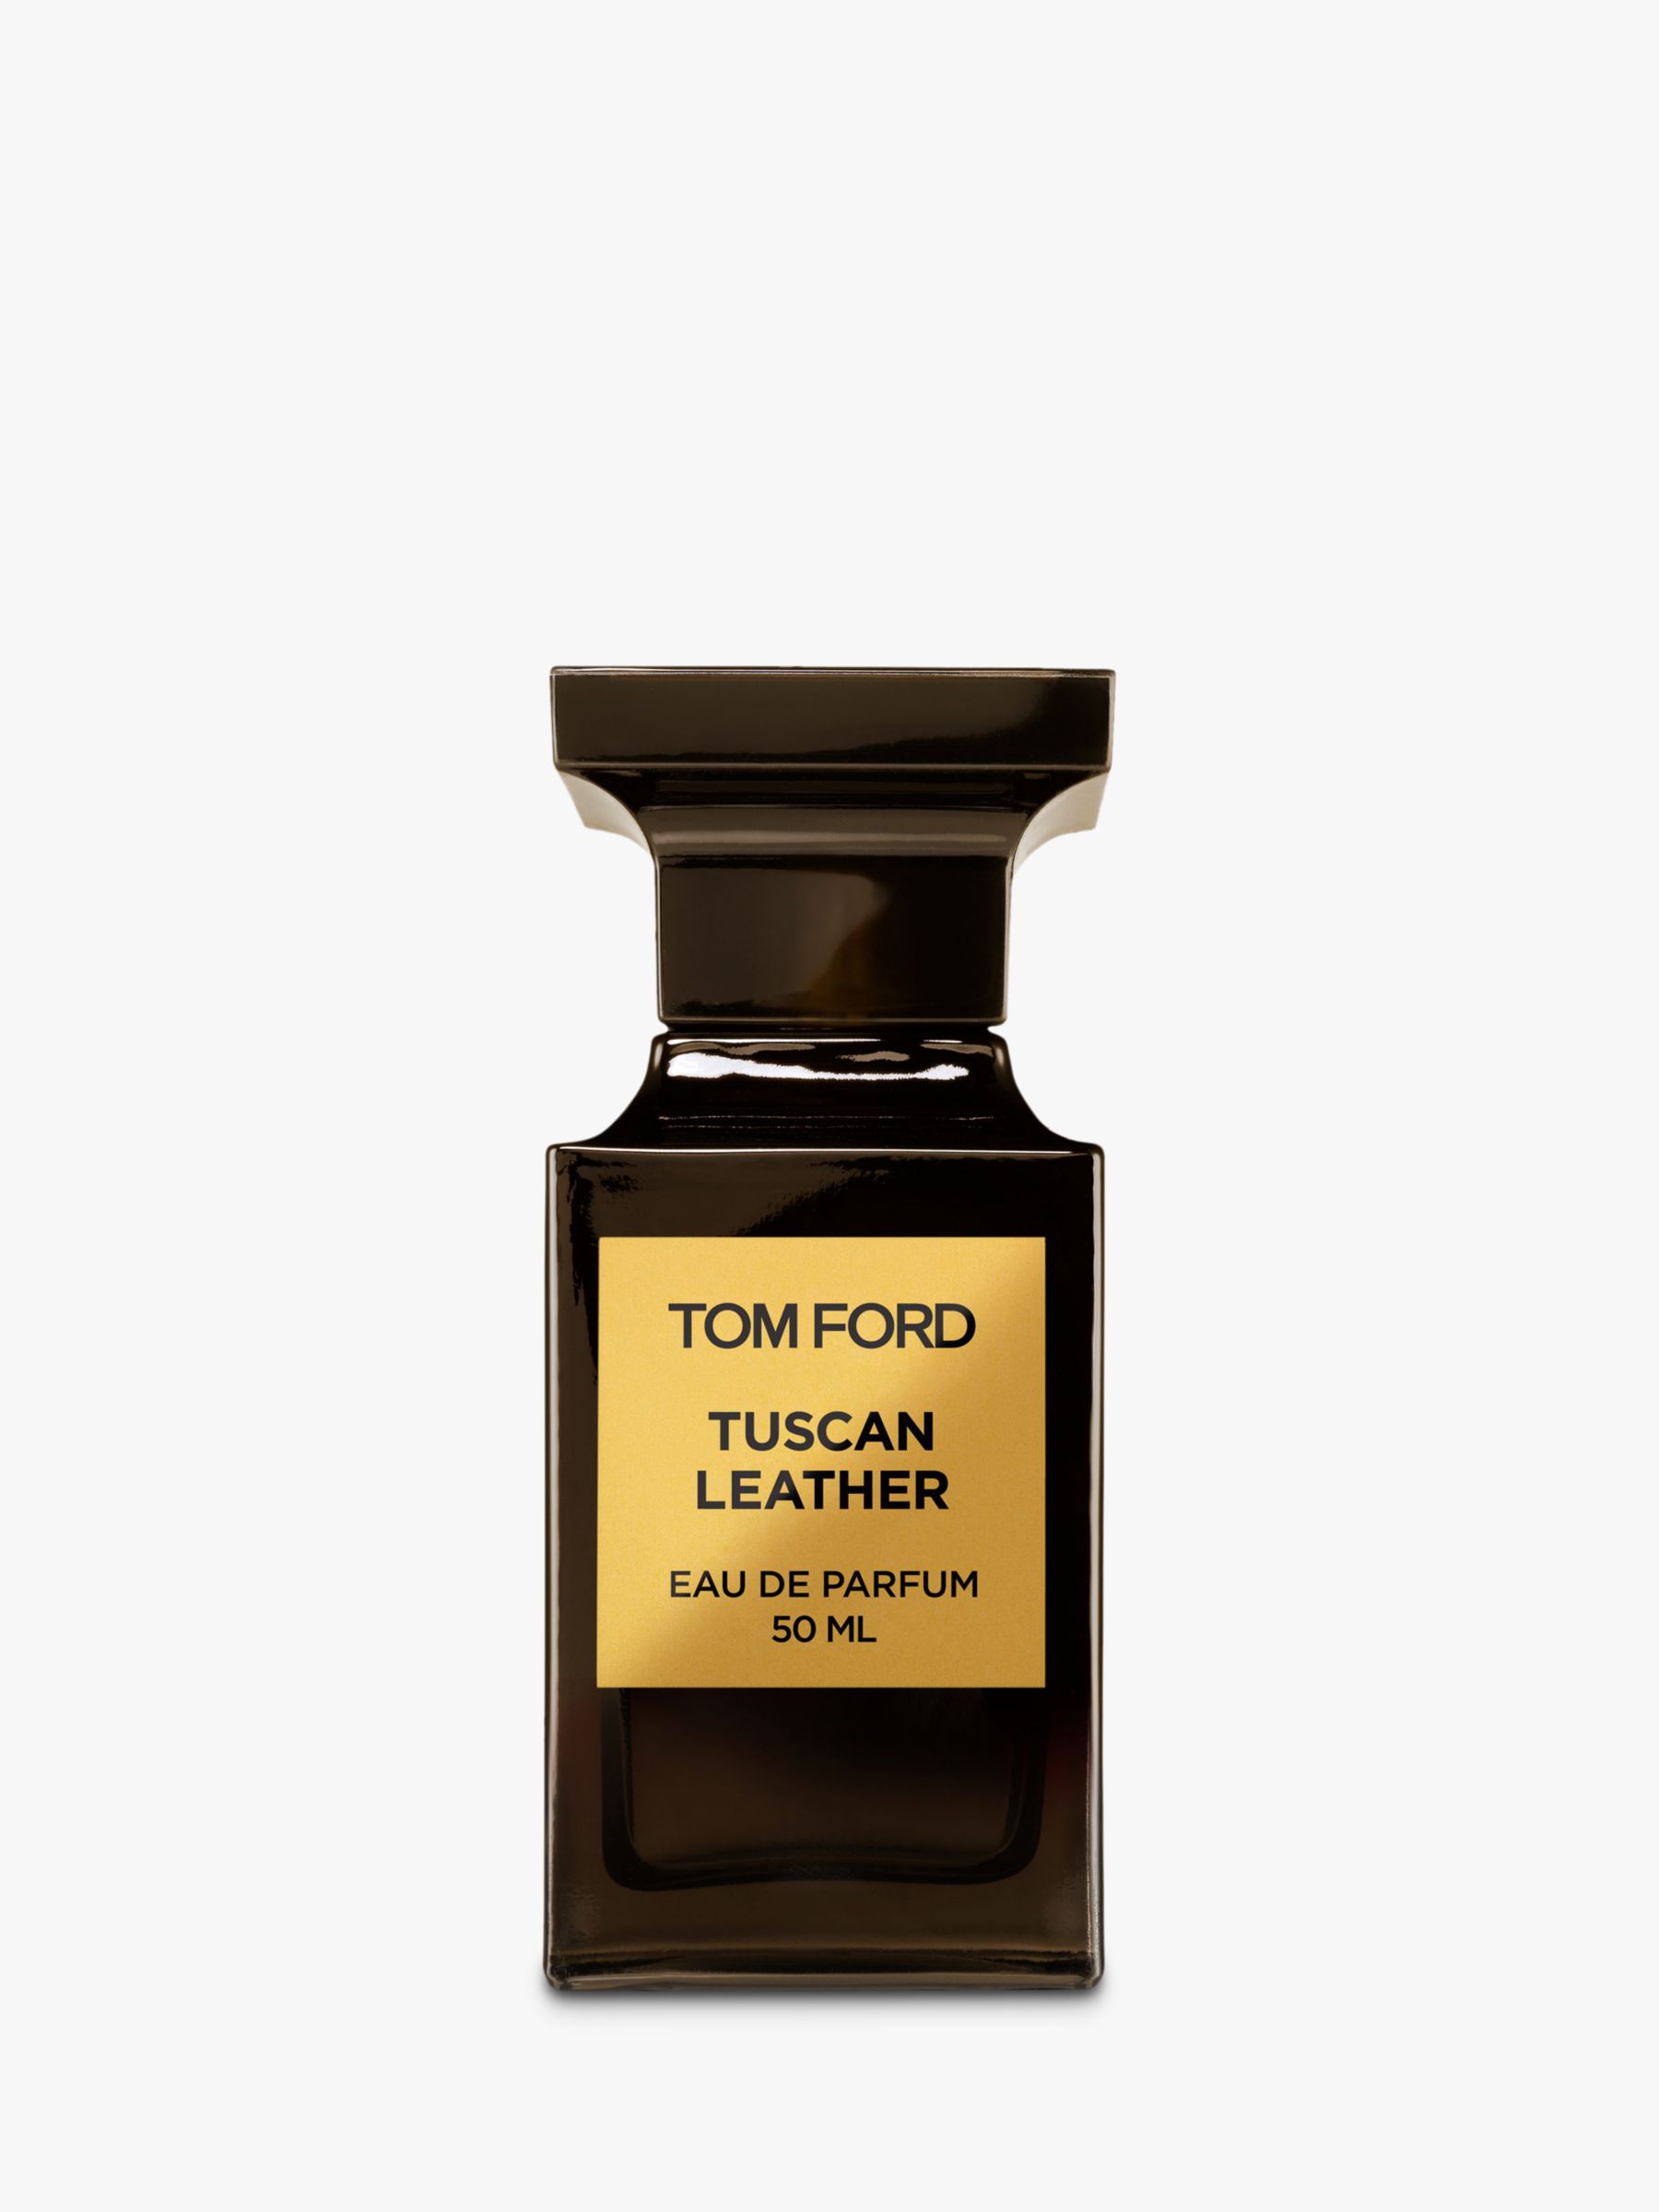 TOM FORD Eau de Parfum, 50ml at John Lewis & Partners